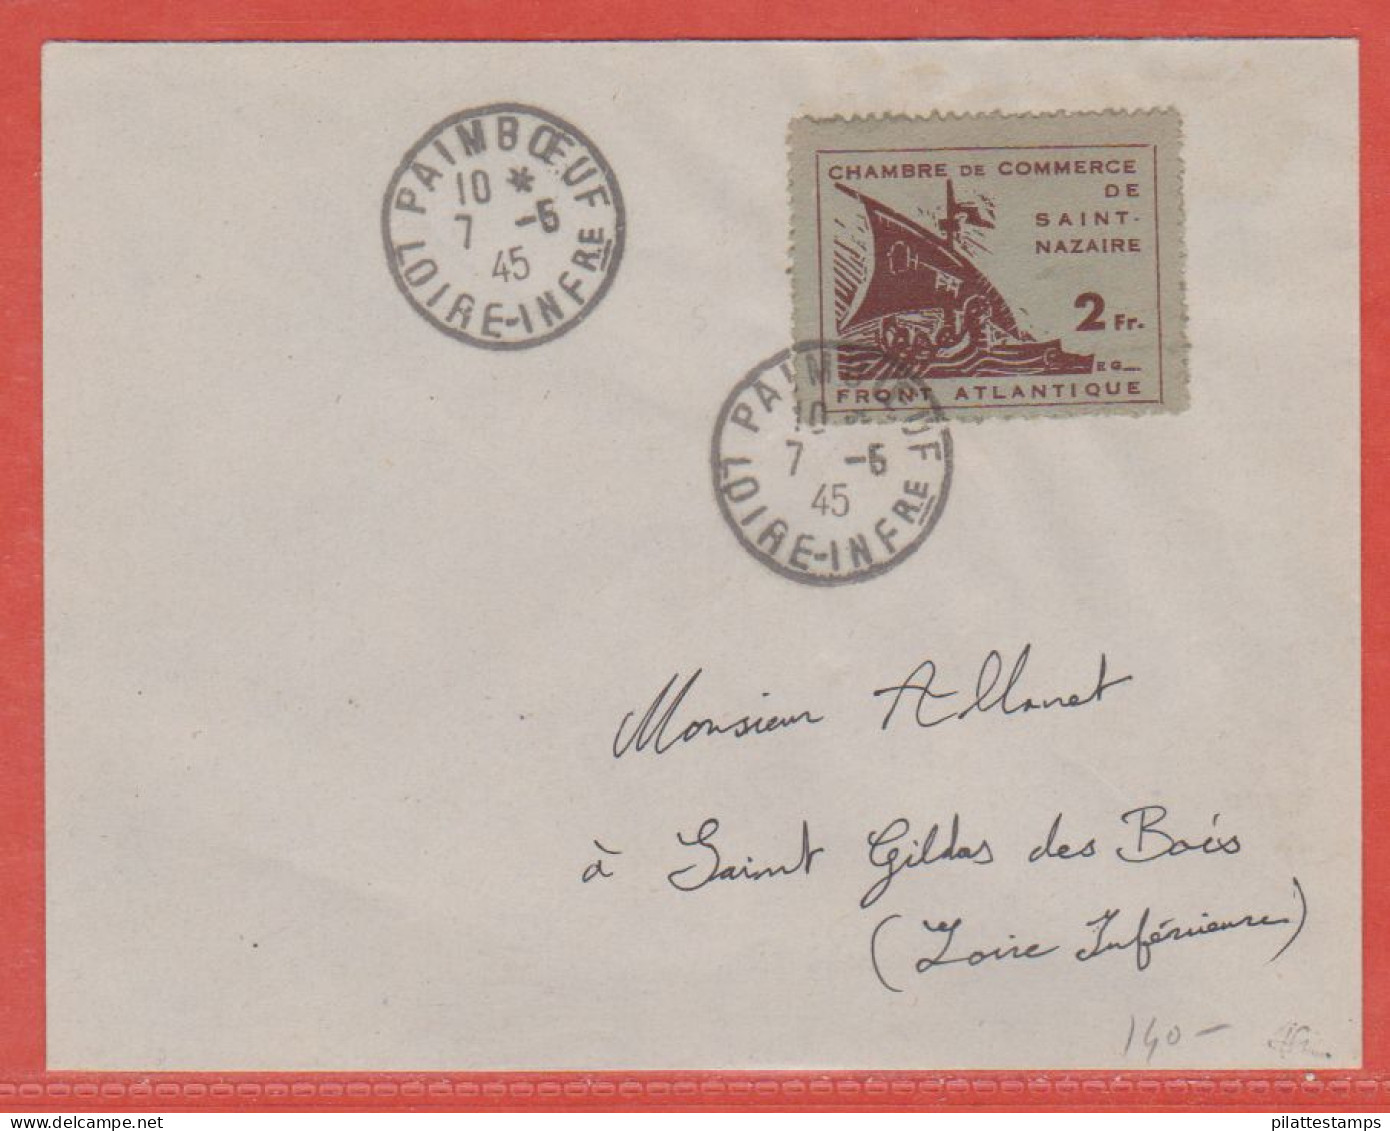 FRANCE GUERRE N°9 SAINT NAZAIRE SUR LETTRE DE 1945 DE PAIMBOEUF POUR SAINT GILDAS DES BOIS - War Stamps